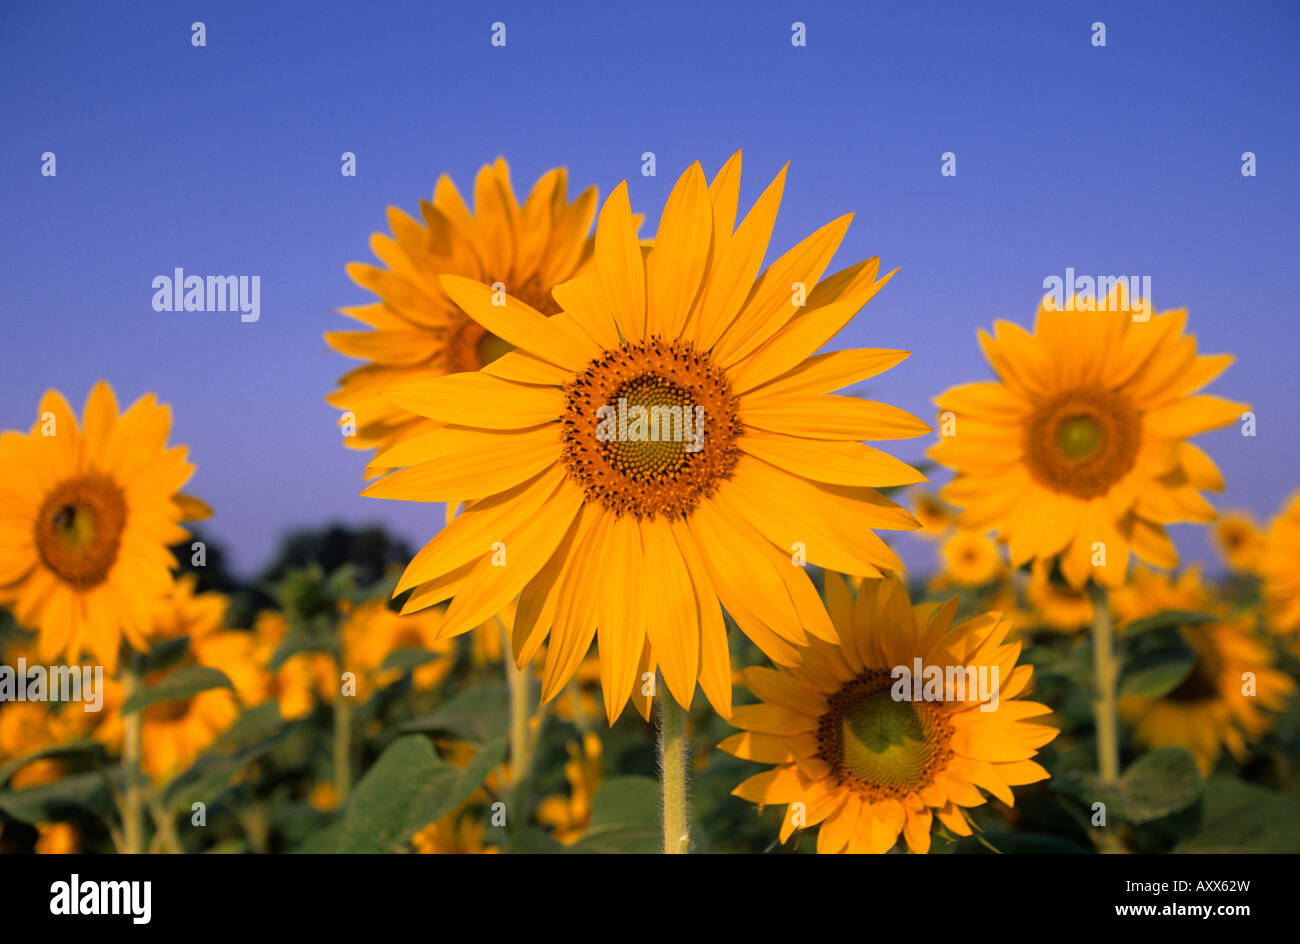 Sunflower, (Helianthus spec), Bielefeld, NRW, Germany Stock Photo